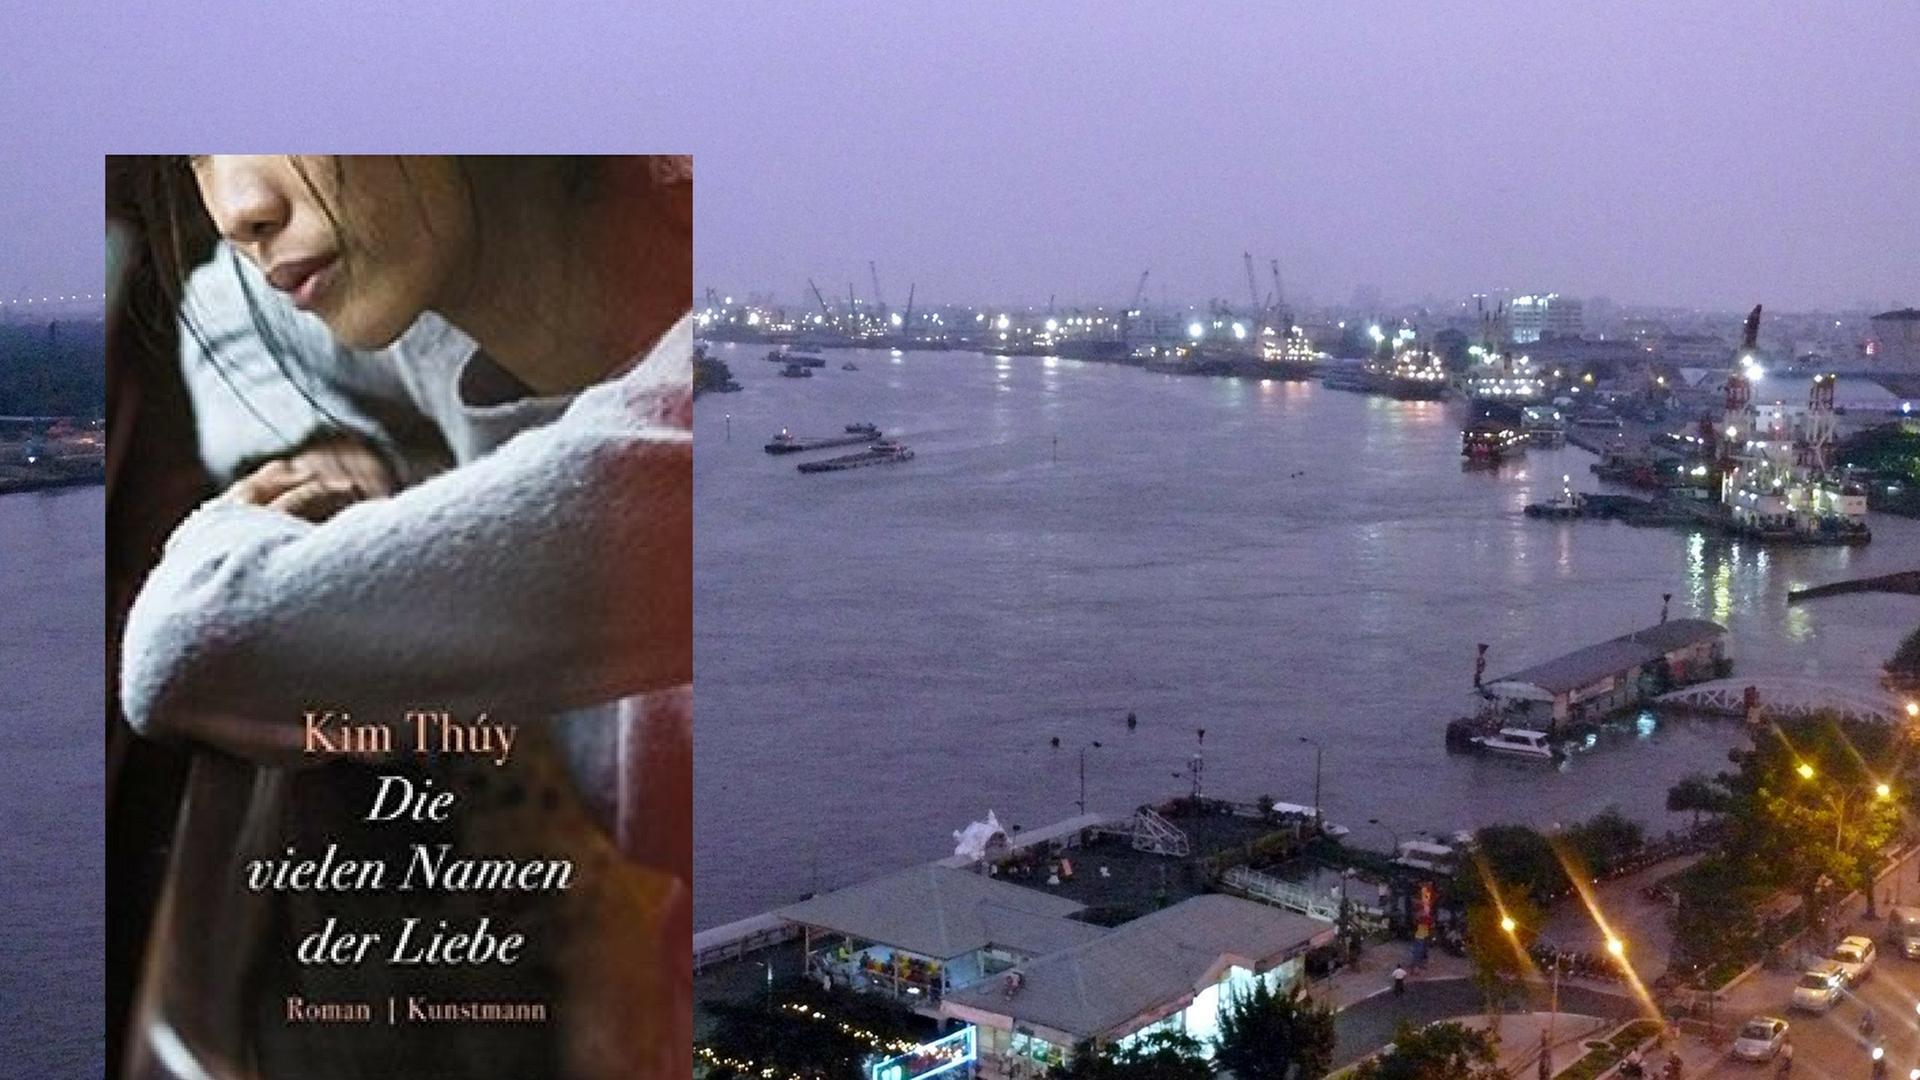 Buchcover: "Kim Thúy: Die vielen Namen der Liebe" und Hafen von Ho Chi Minh City